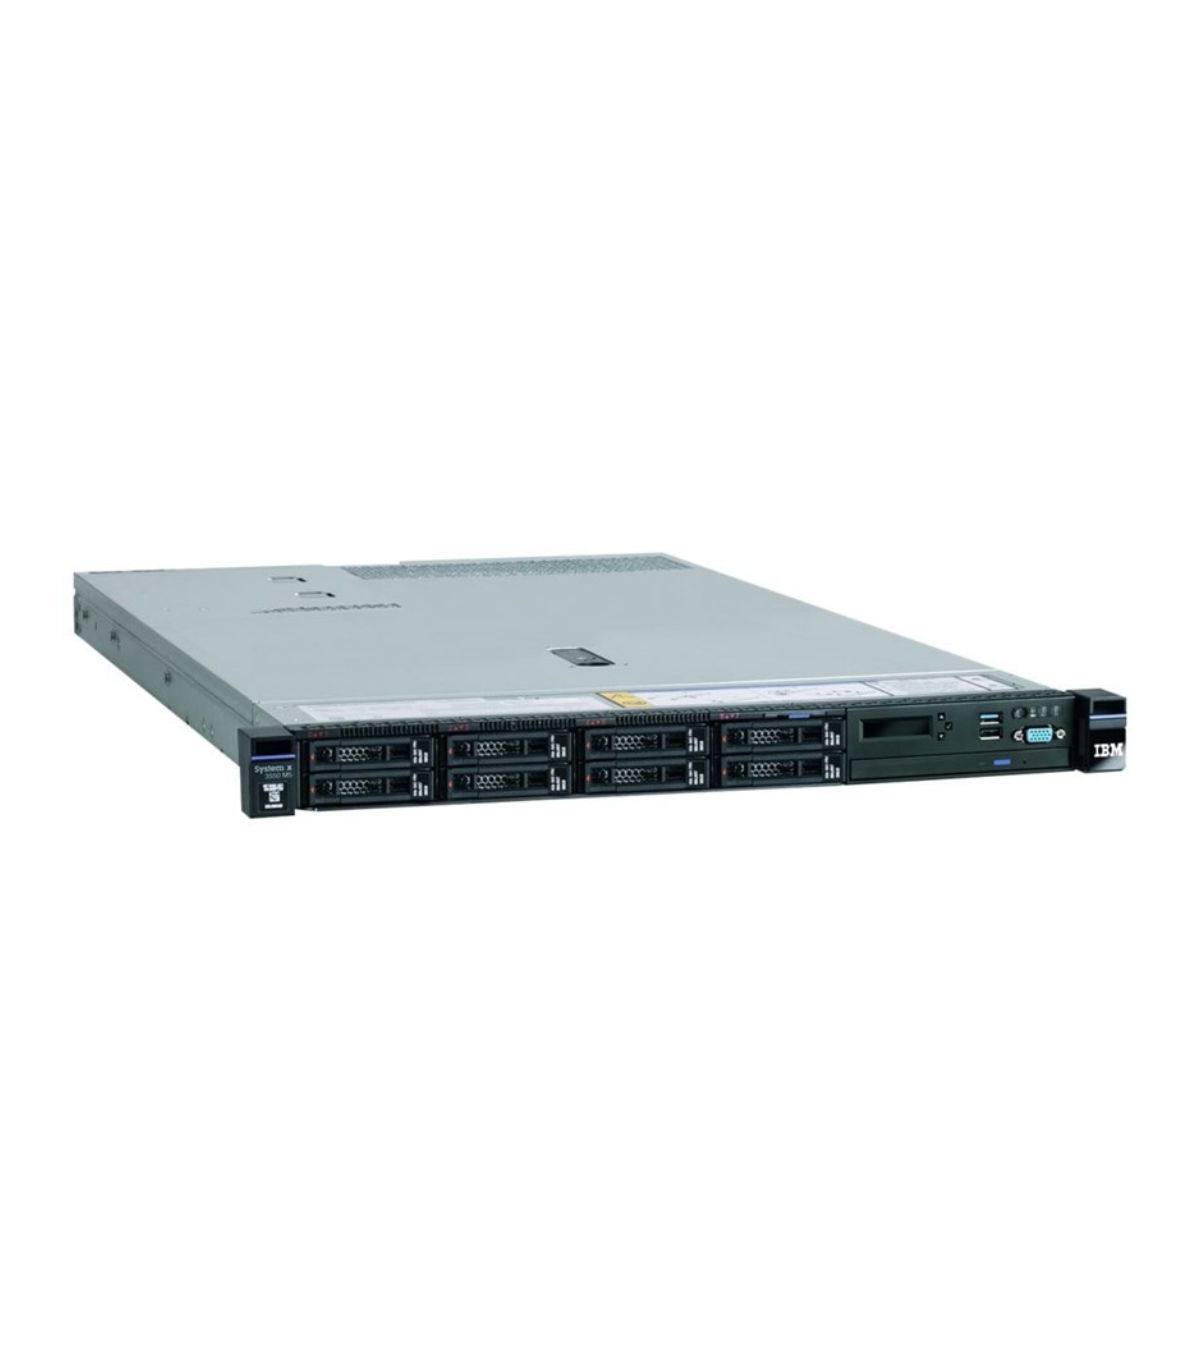 LENOVO X3550 M5 2X14C E5-2680 V4 2.40 GHz 256GB 8X2,5" M5210 1GB IMM(KEY) 2X750W RAMKI